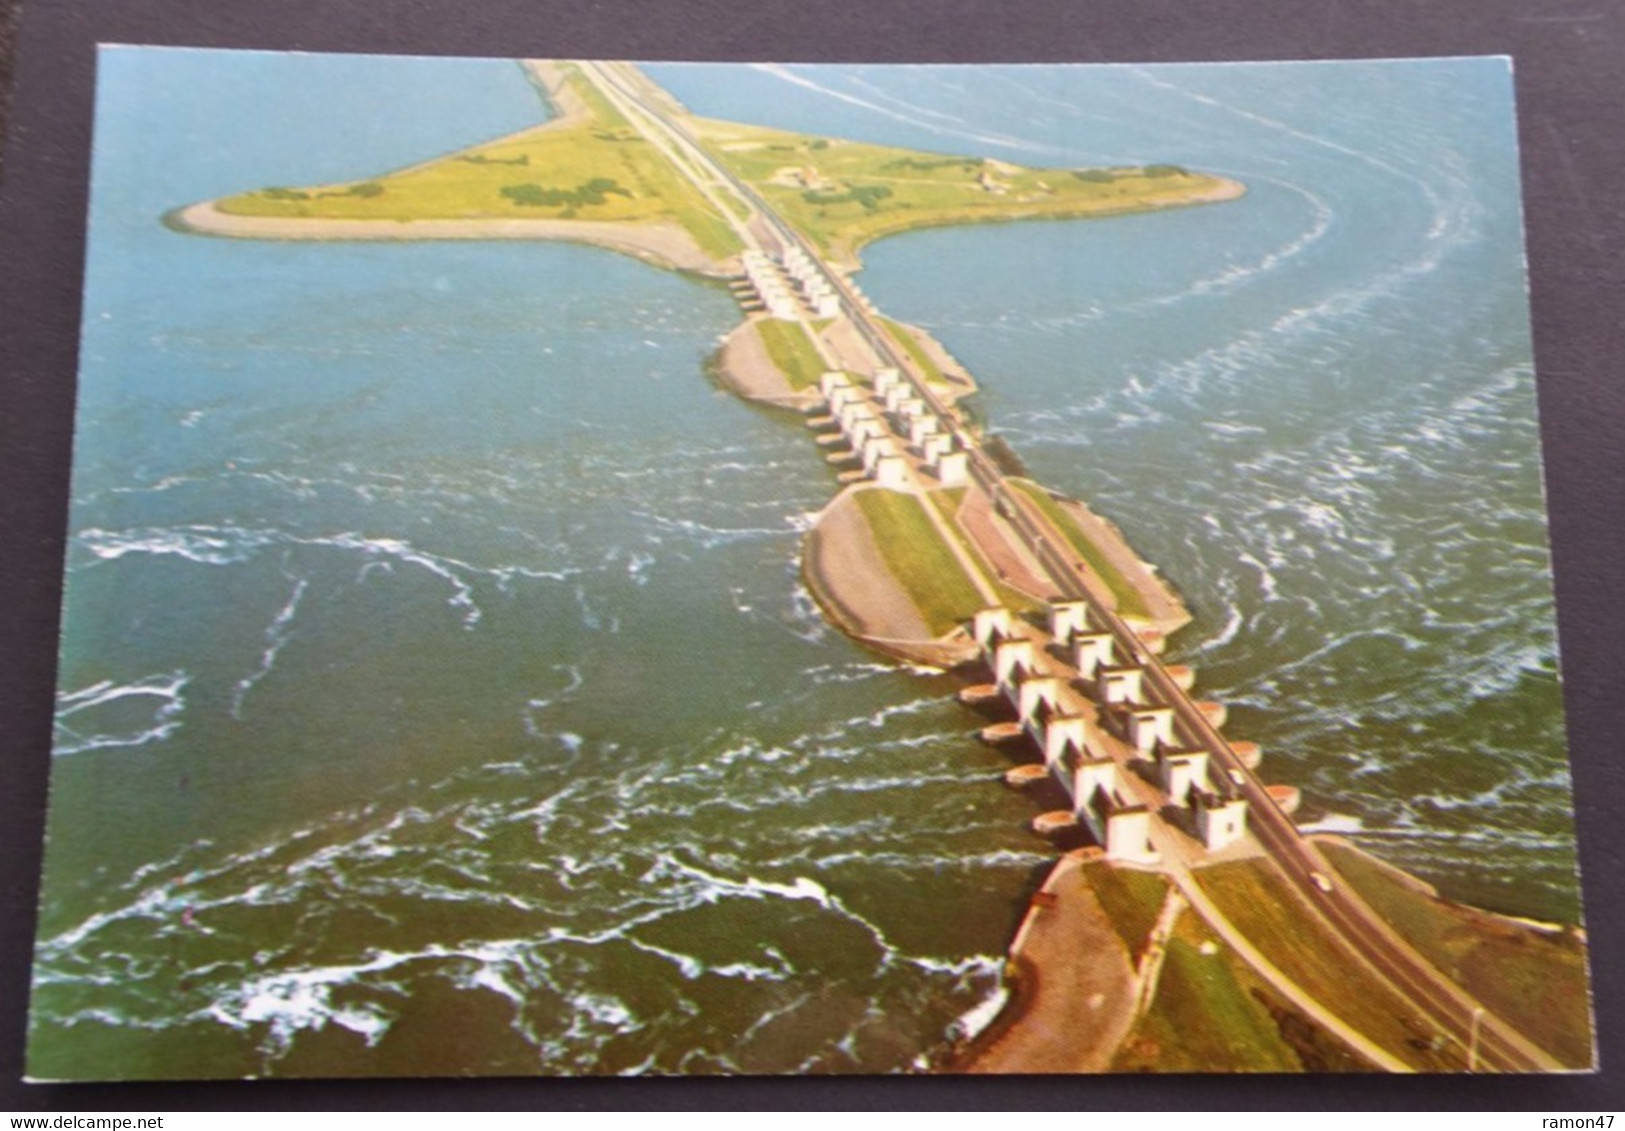 Den Oever, Wieringen - Waterspuien, Mastrigt En Verhoeven, Arnhem - Den Oever (& Afsluitdijk)